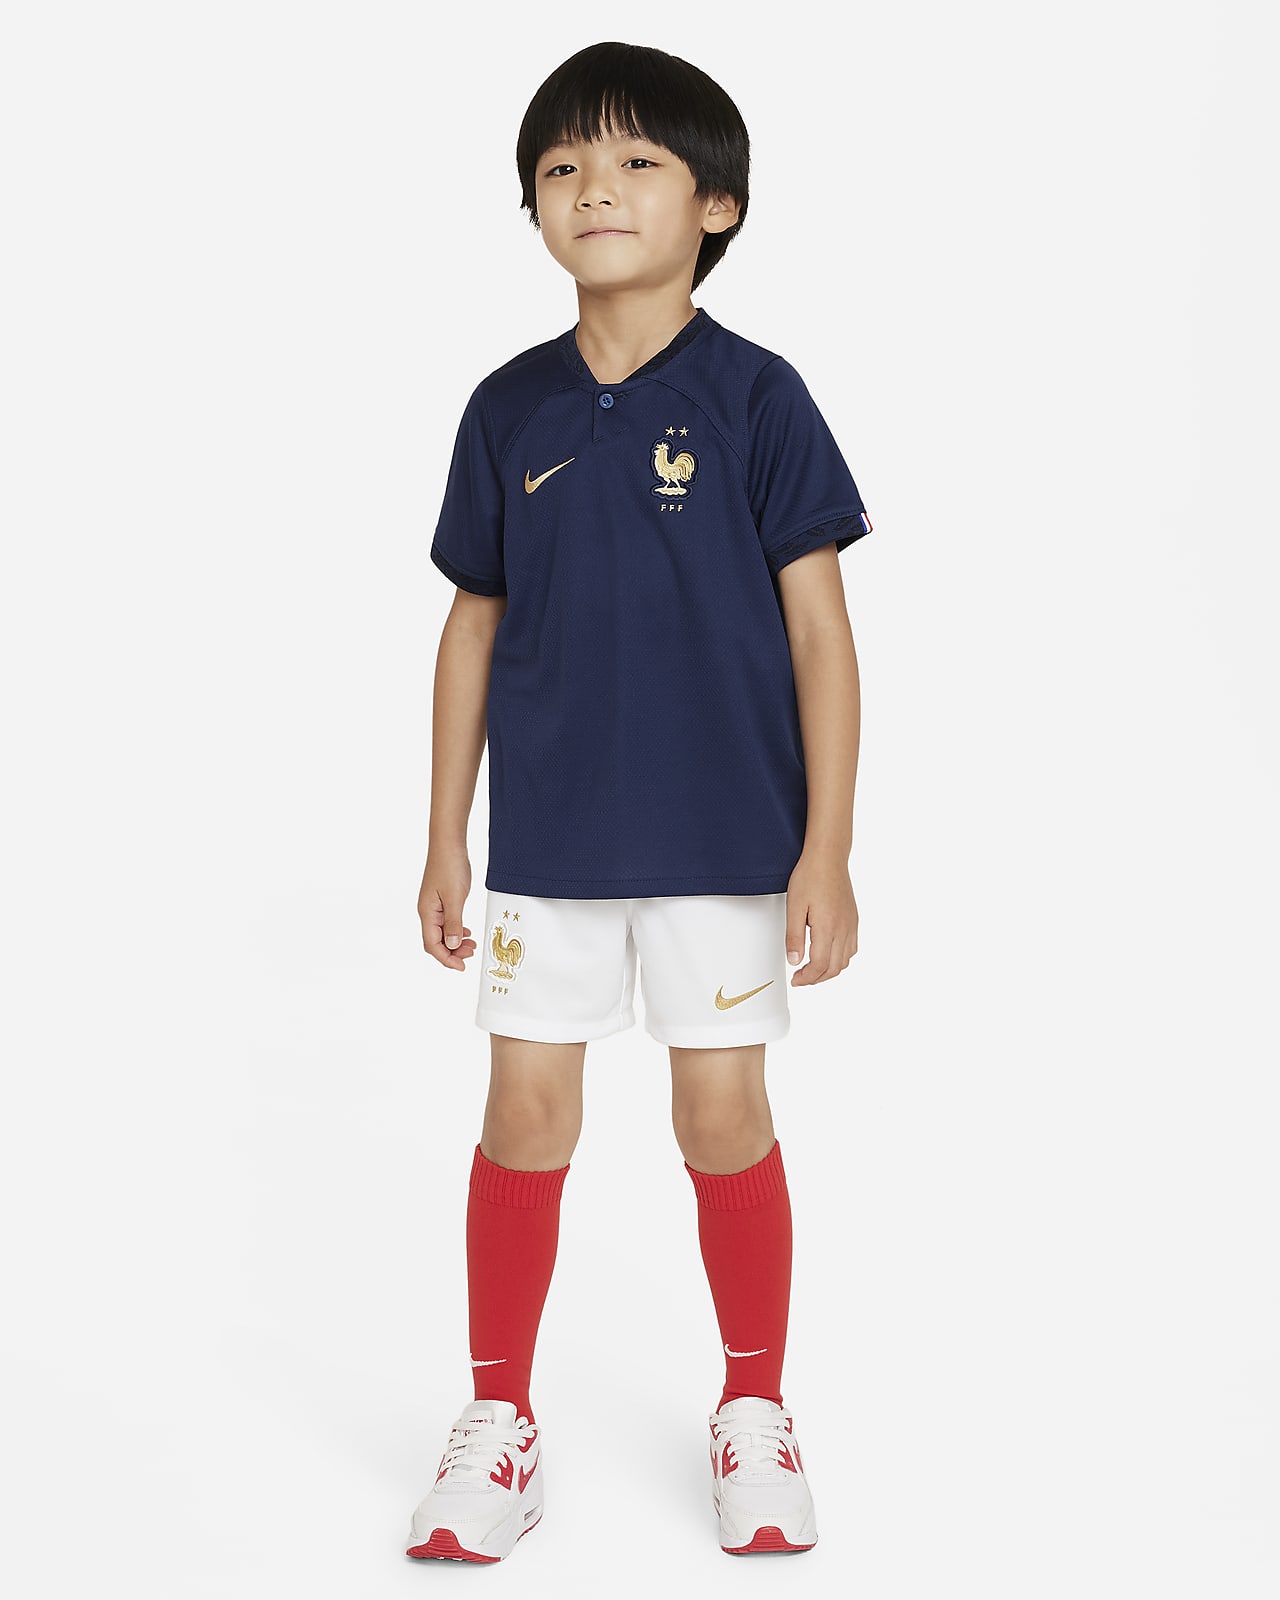 FFF 2022/23 Home Nike Fußballtrikot-Set für jüngere Kinder